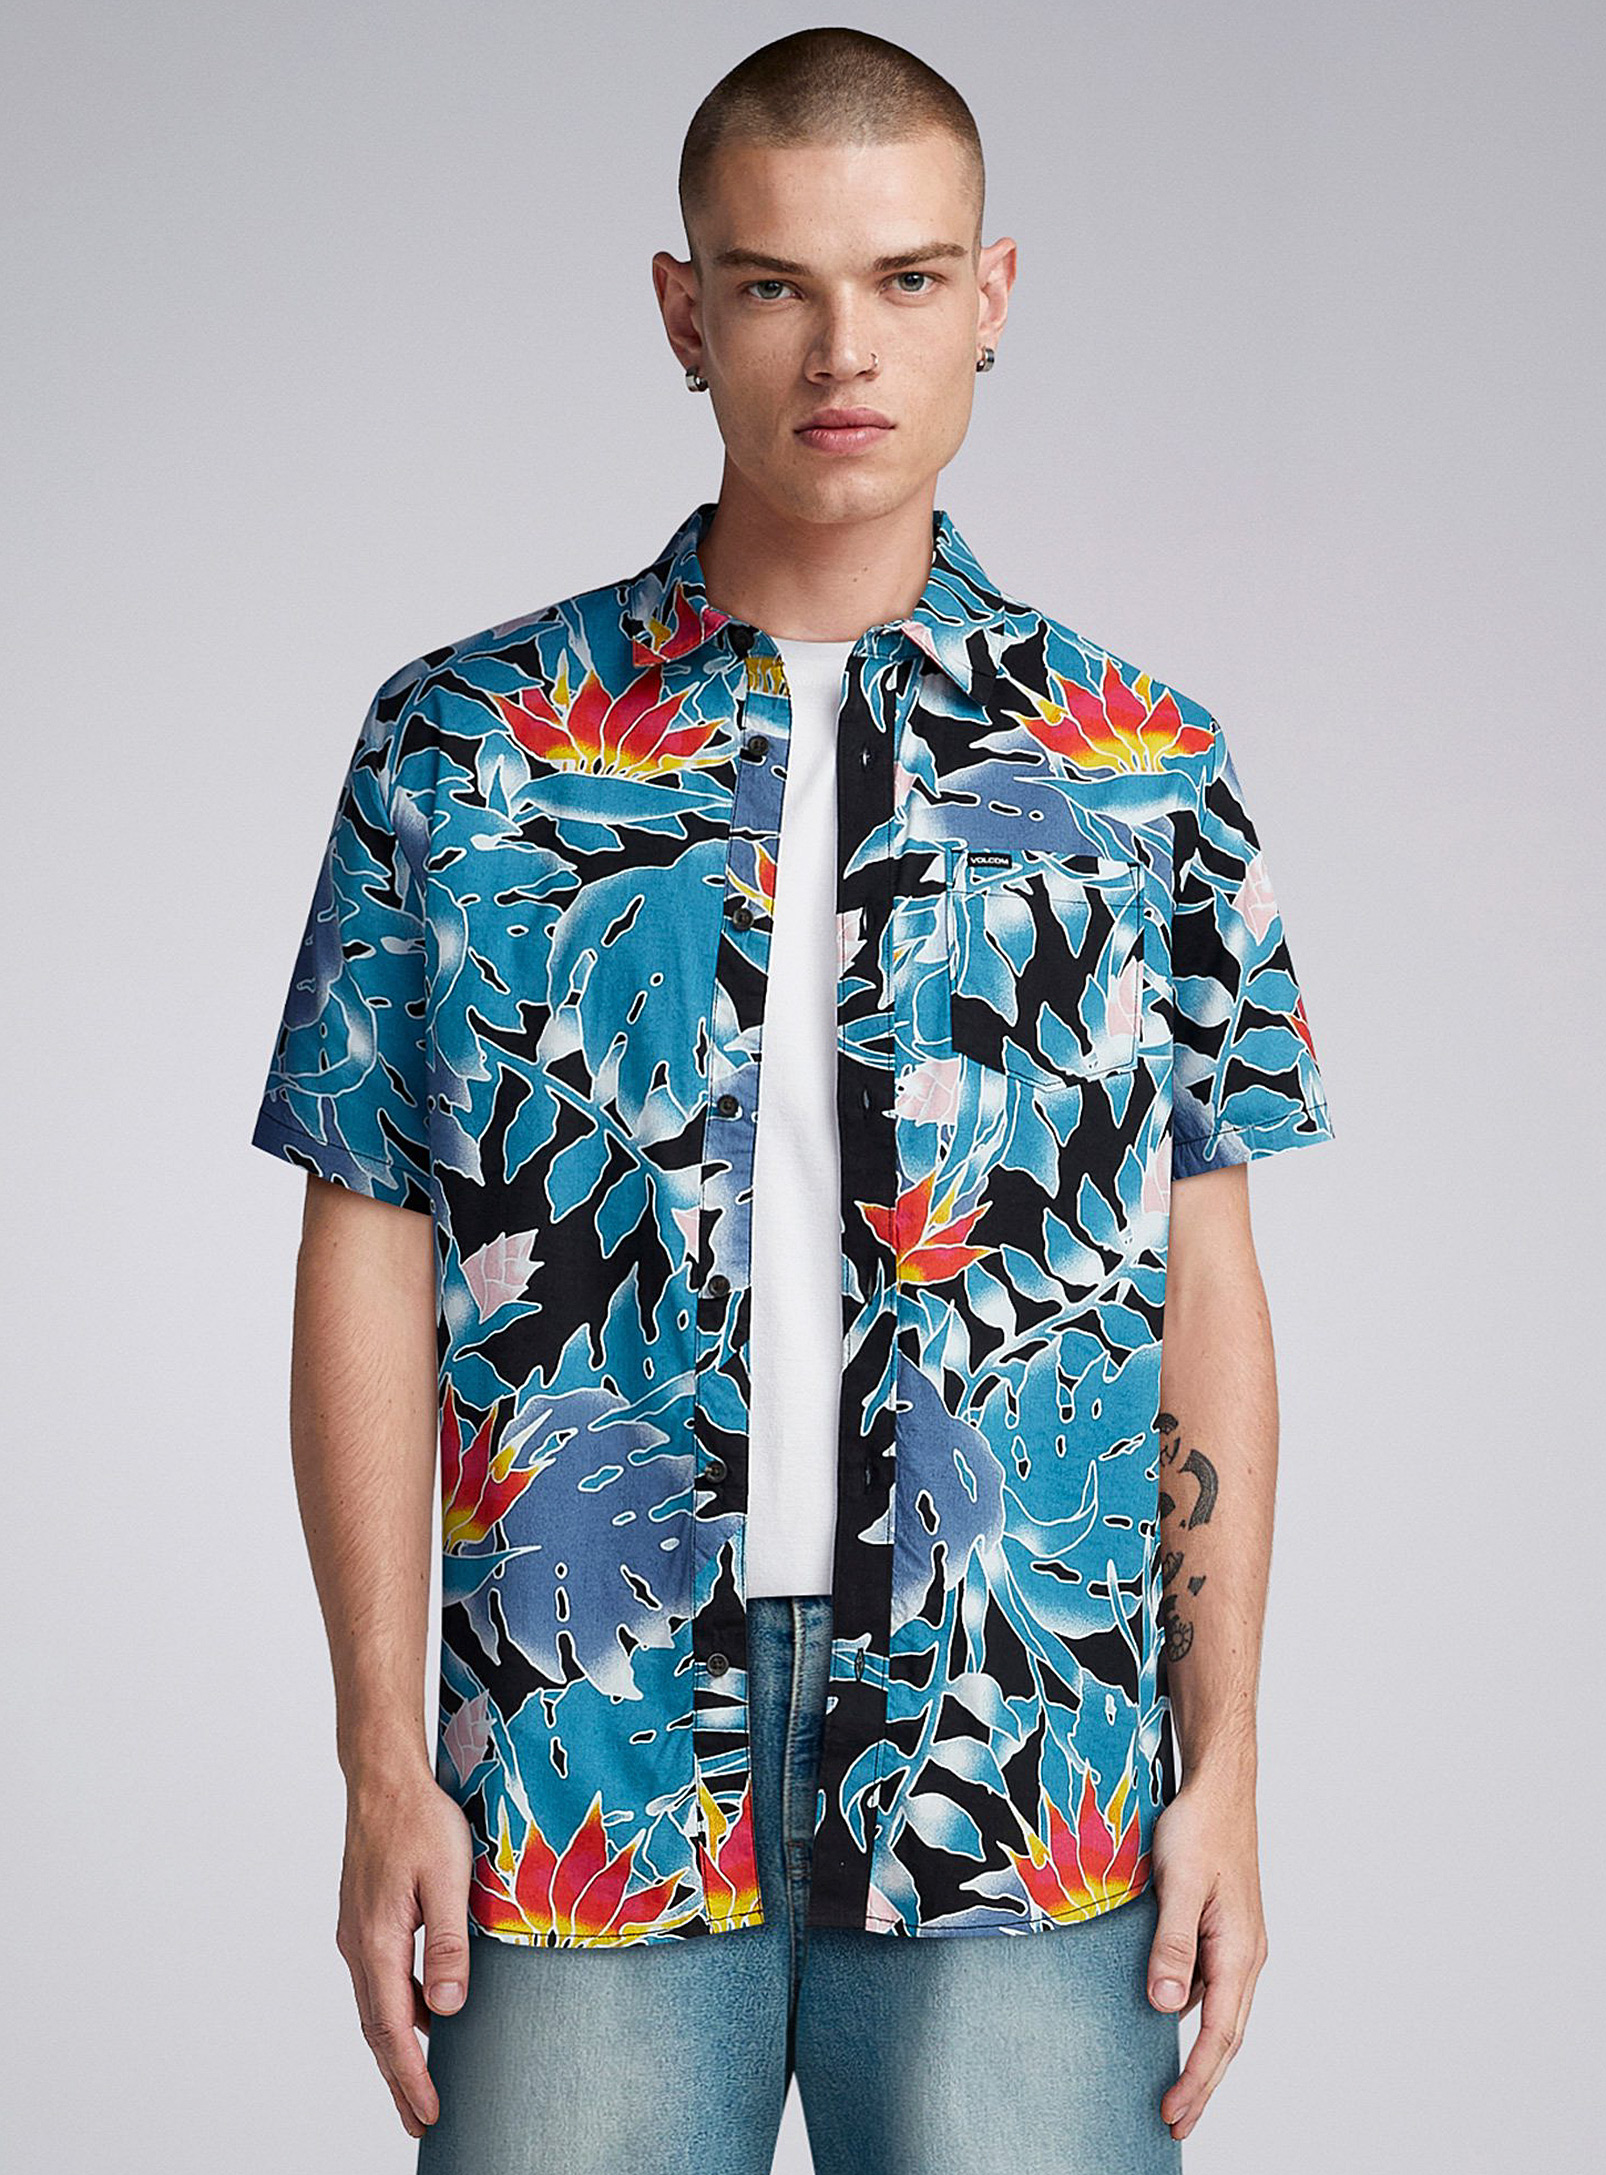 Volcom - Men's Contrast flora shirt